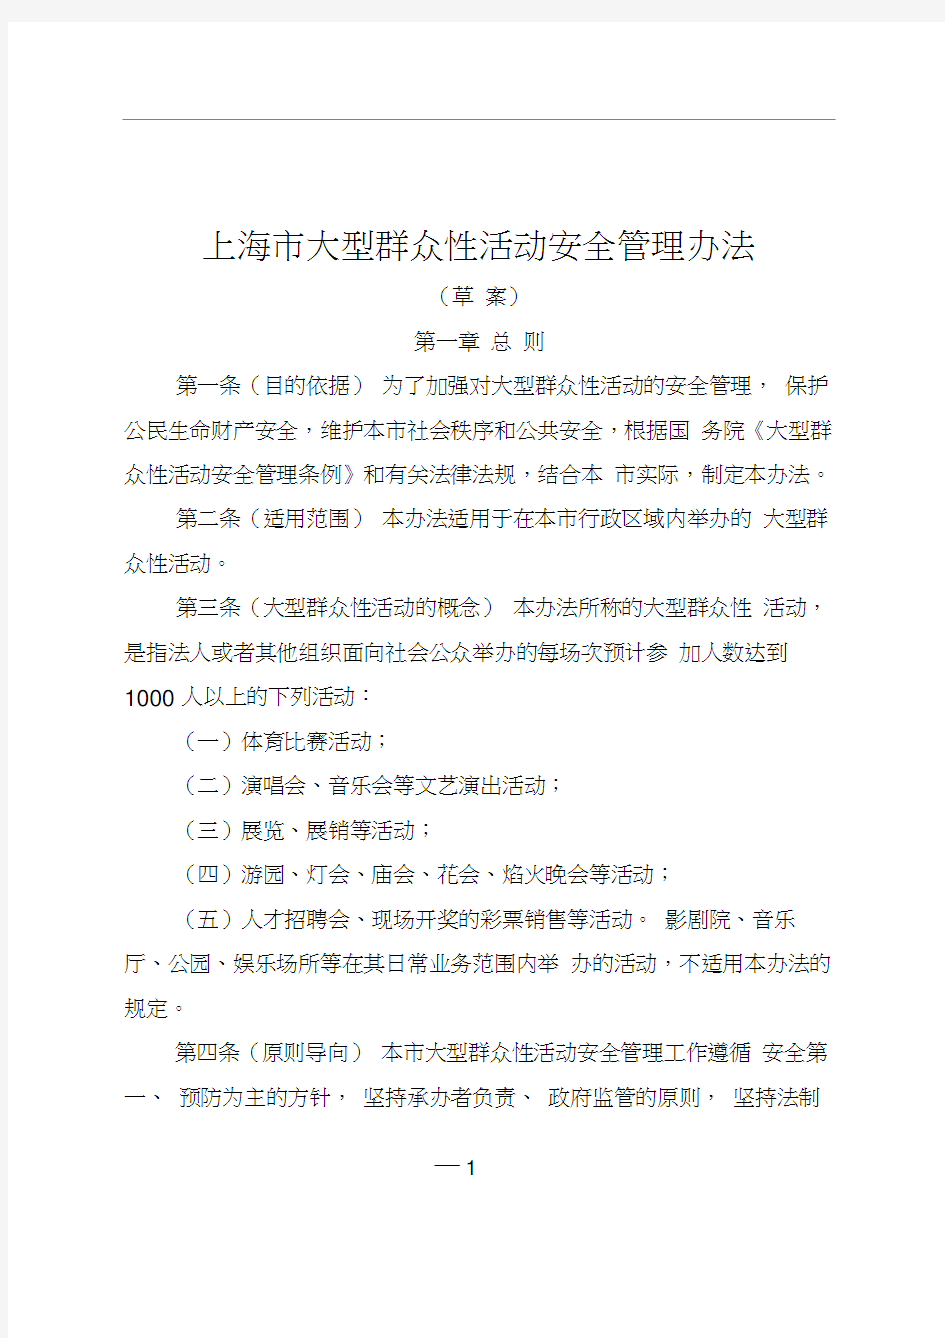 上海大型群众性活动安全管理办法-上海政府法制信息网